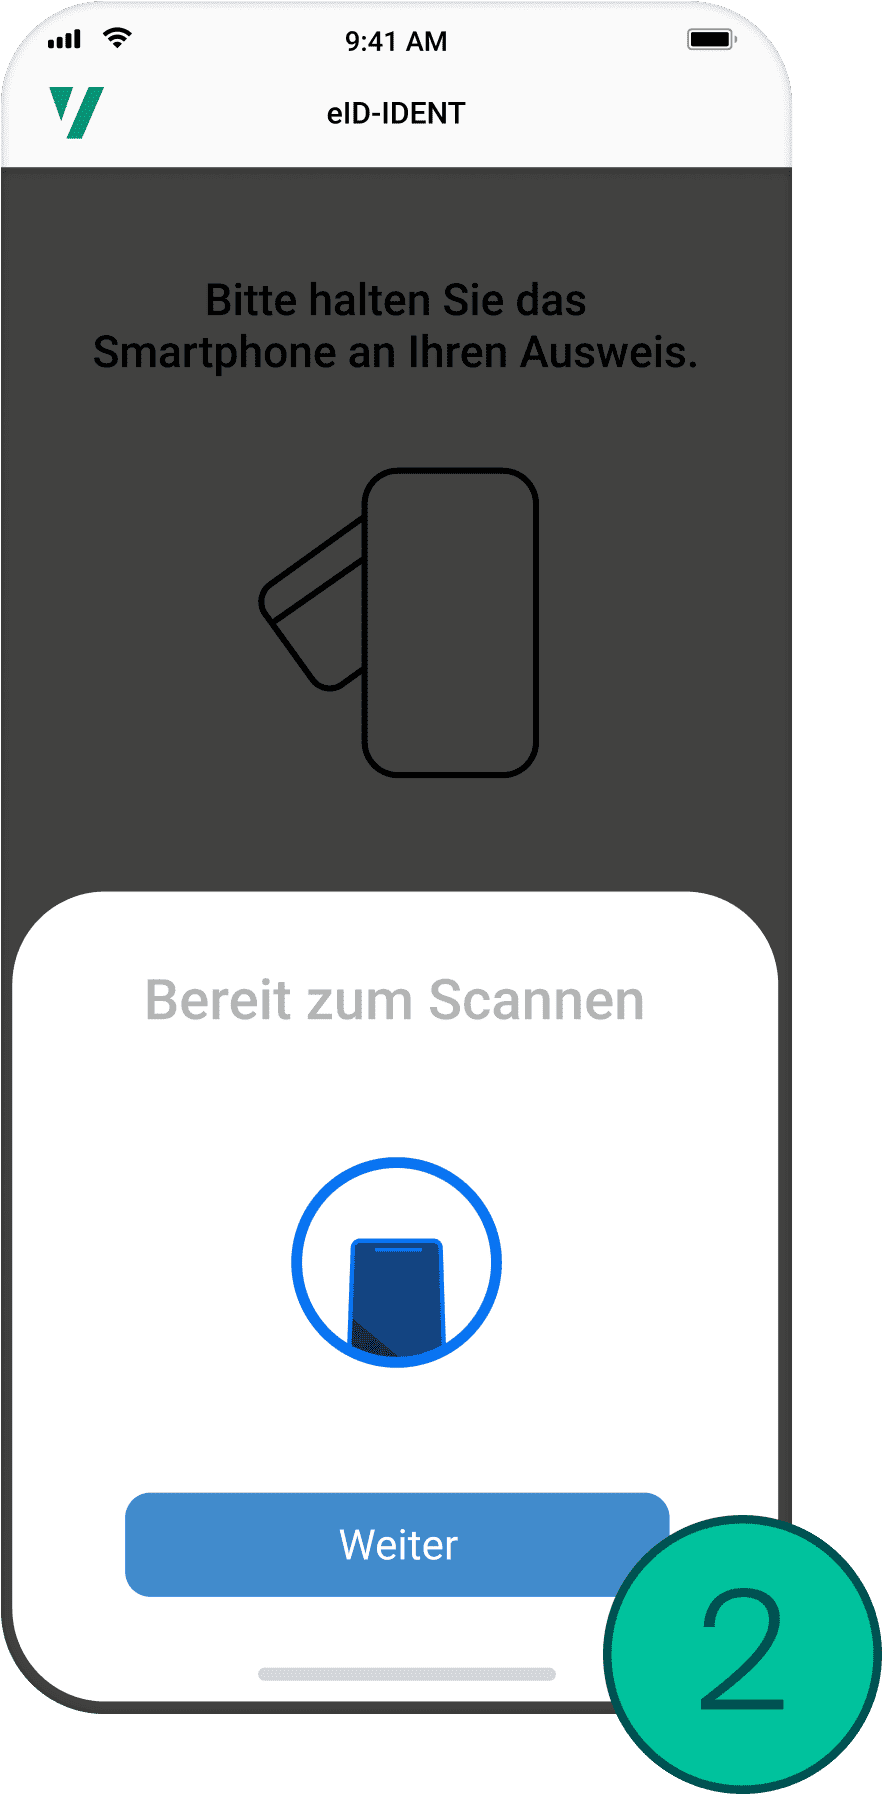 Bildschirmanzeige eines Smartphones mit der Aufforderung, es für den Scanvorgang an einen Ausweis zu halten.